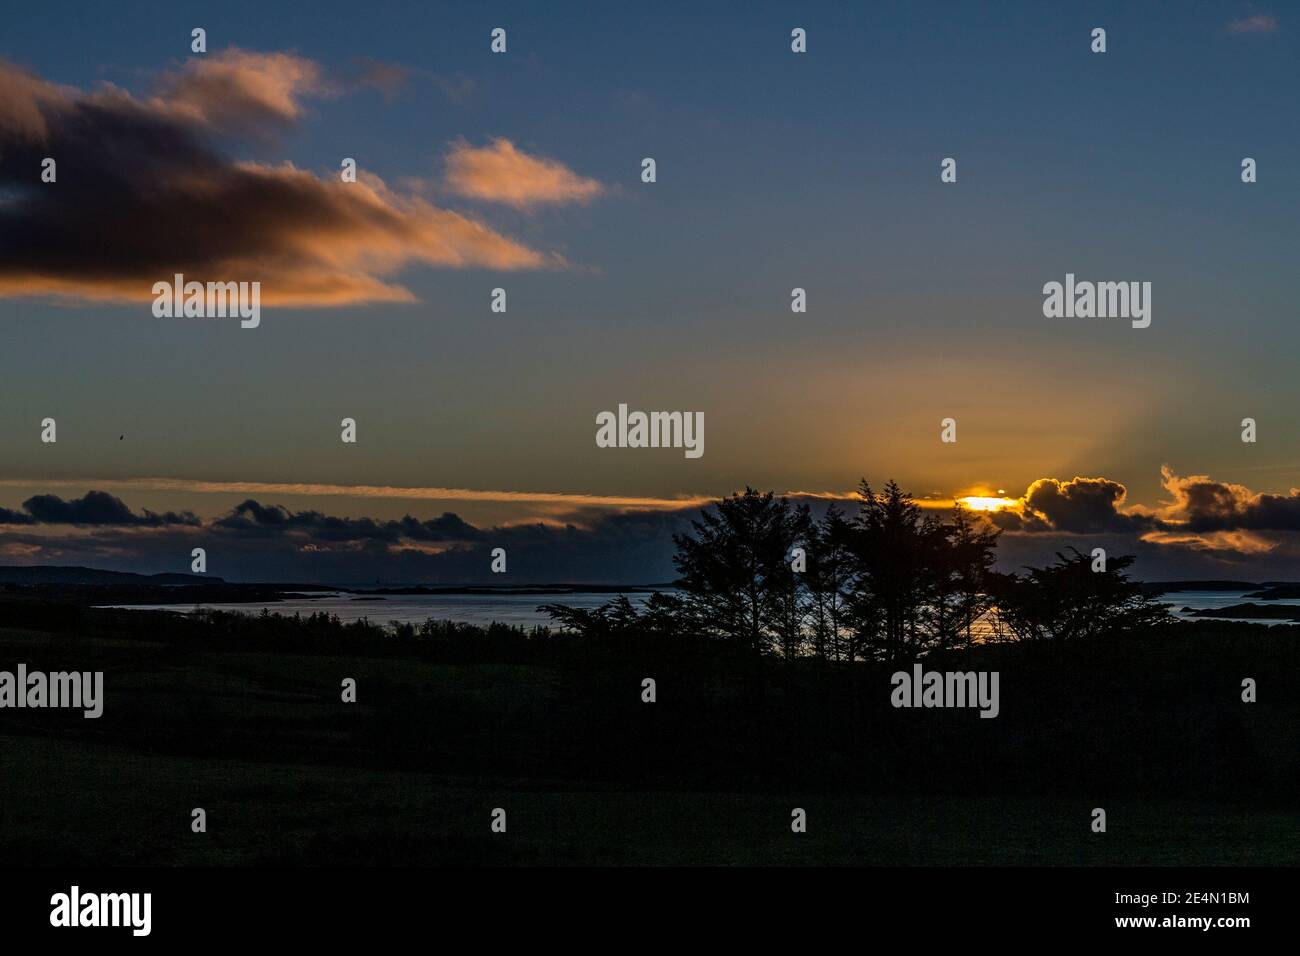 Roaring Water Bay, West Cork, Irland. Januar 2021. Die Sonne geht über den Muschelfarmen in der Roaring Water Bay nach einem Tag voller Schnee, Sonne und Temperaturen unter dem Gefrierpunkt unter. Quelle: AG News/Alamy Live News Stockfoto